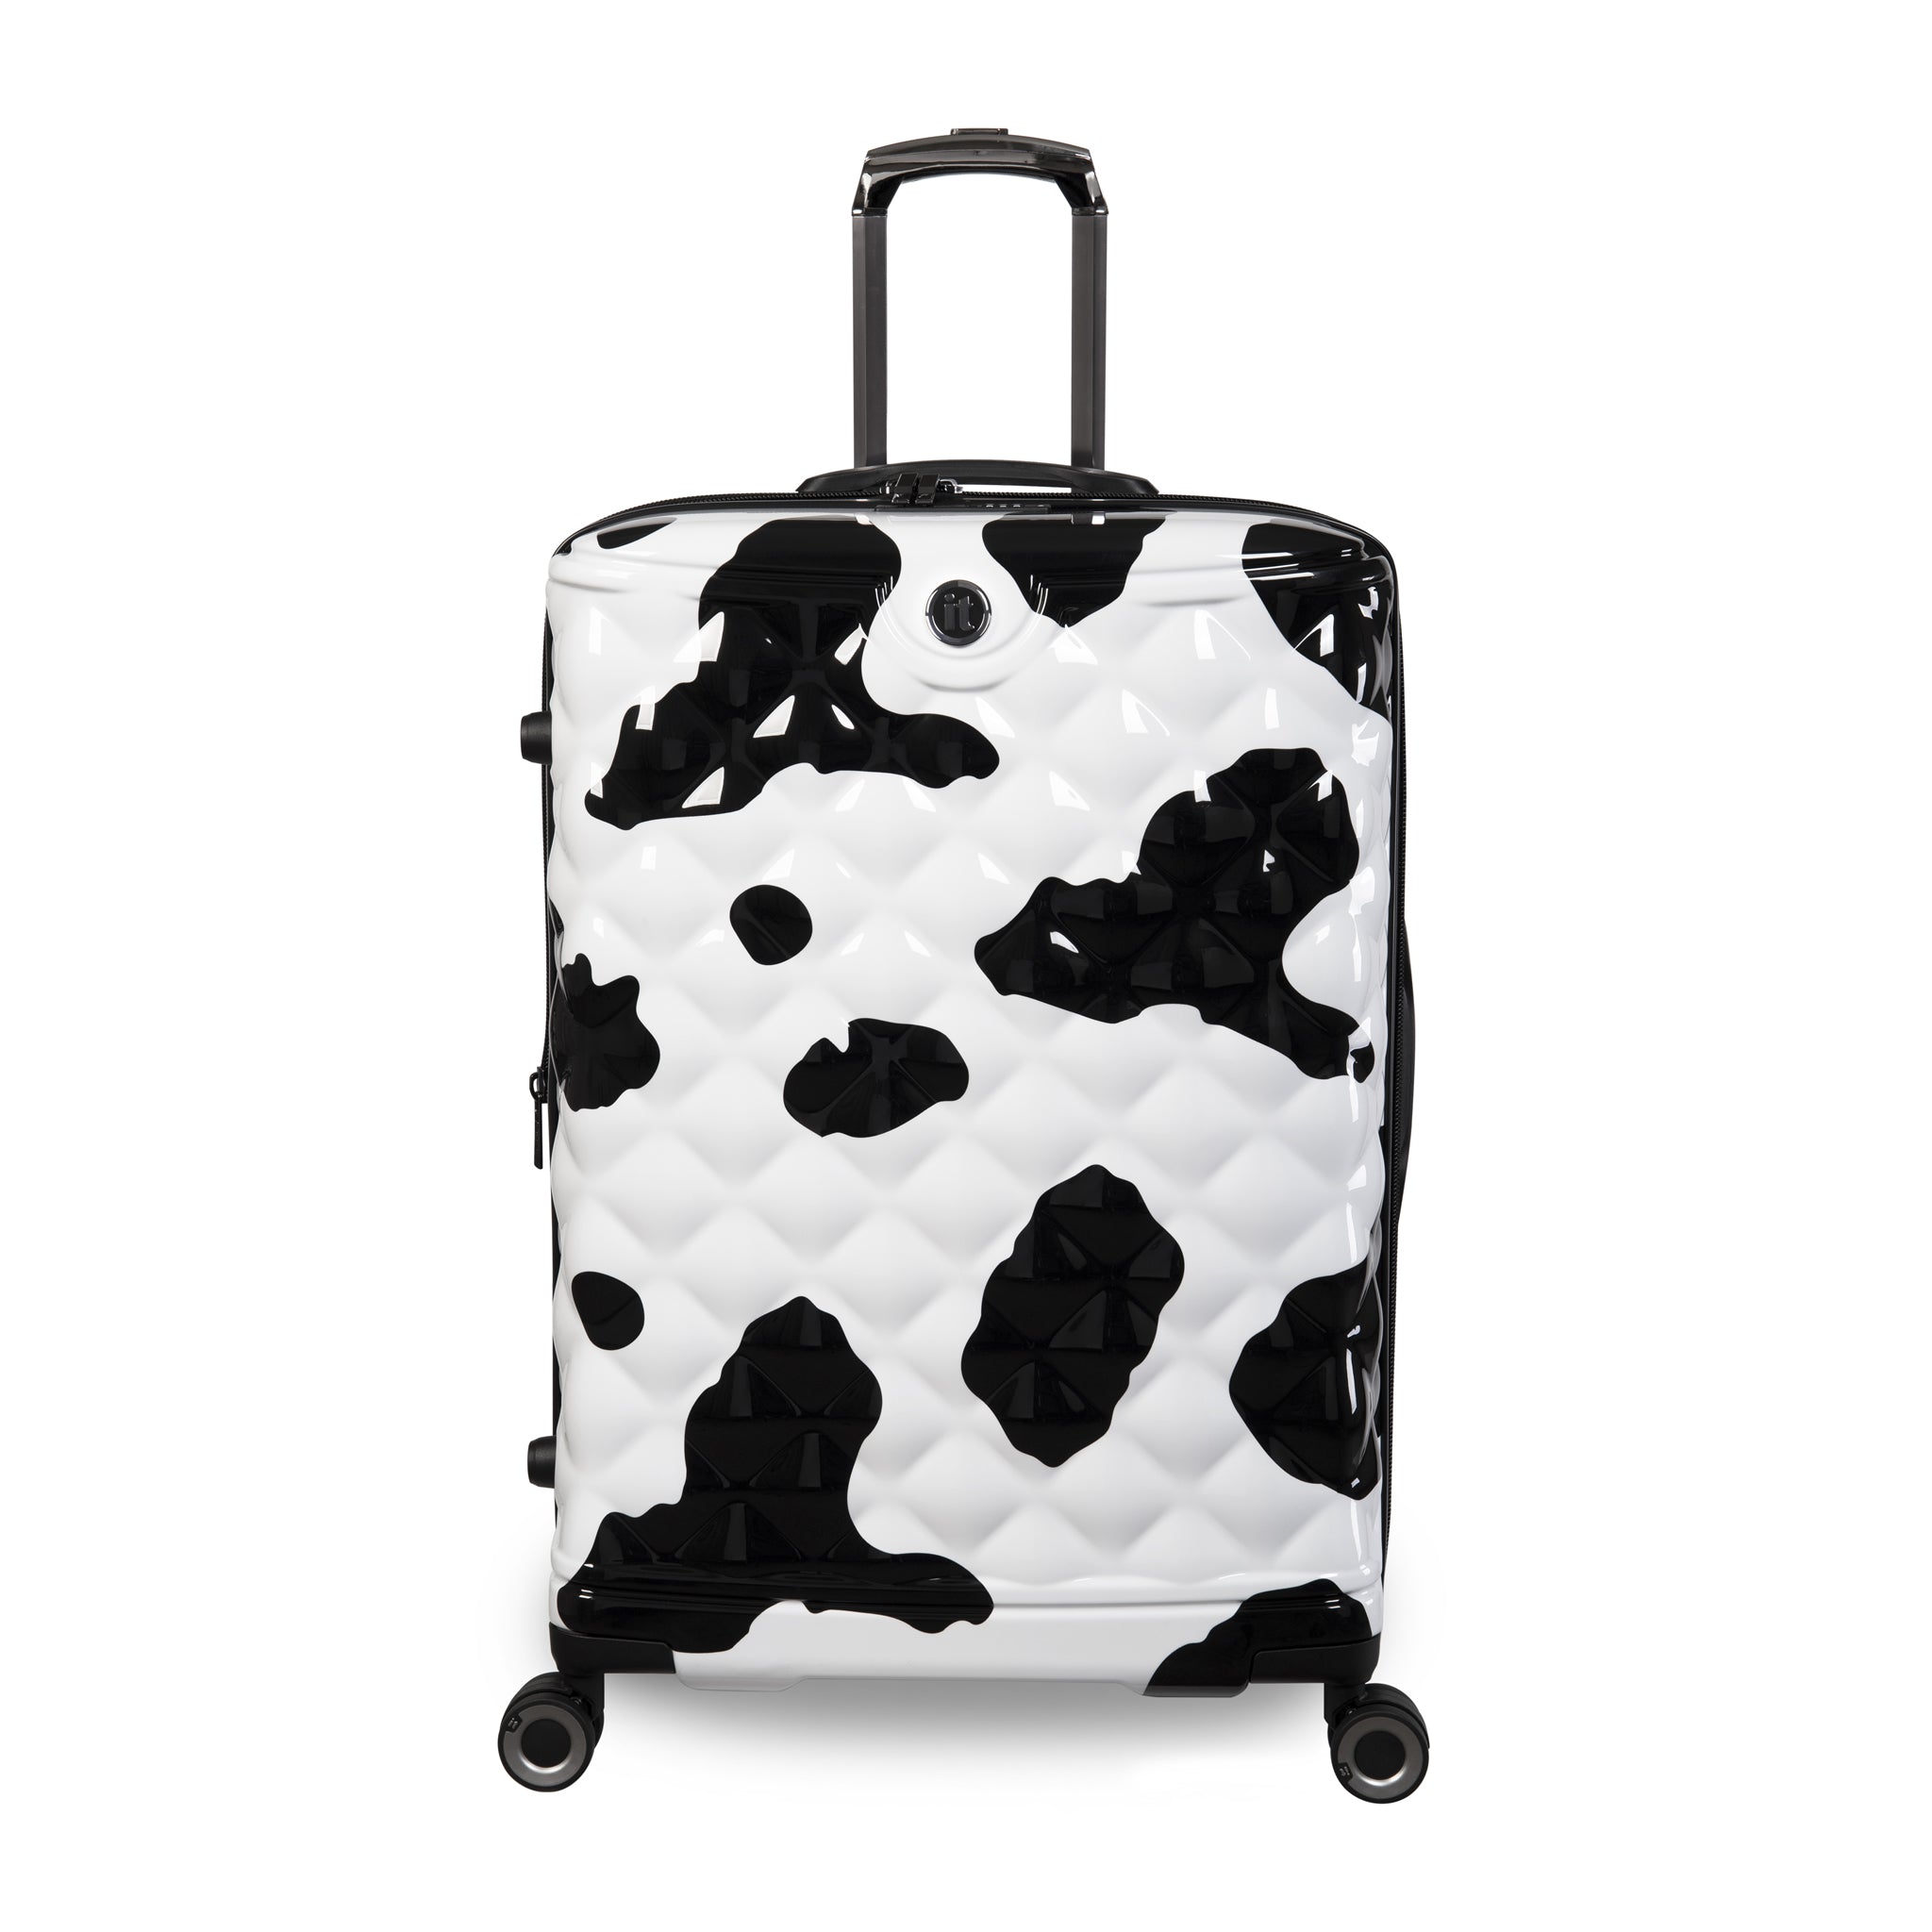 it Luggage  Indulging - Vanity Case in Moo Cow Print